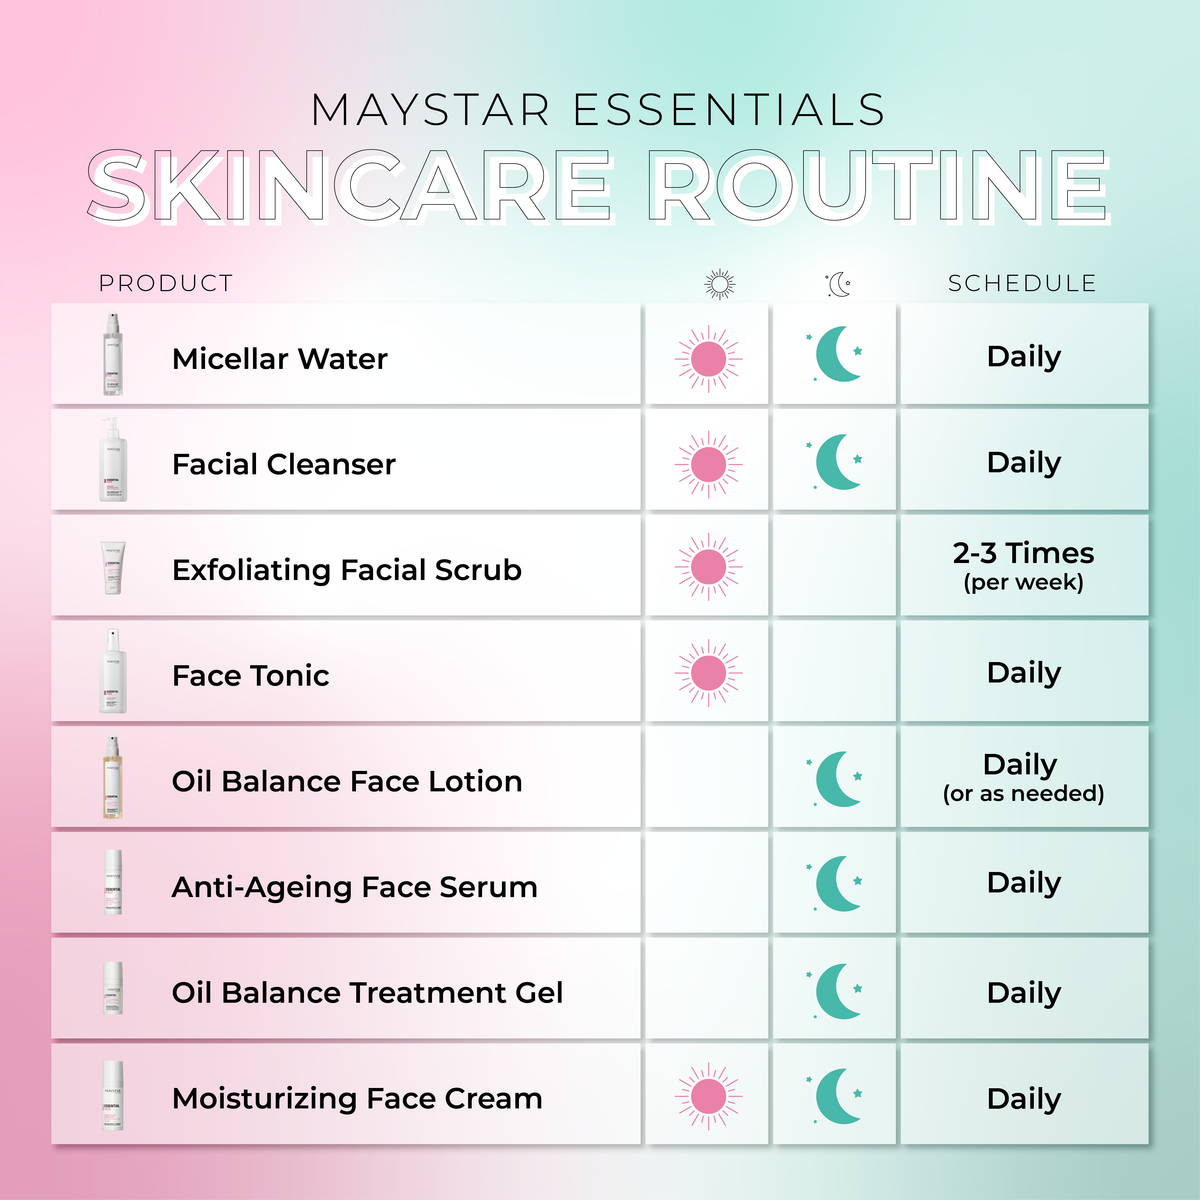 Exfoliating Facial Scrub (200mL) - Maystar Essential